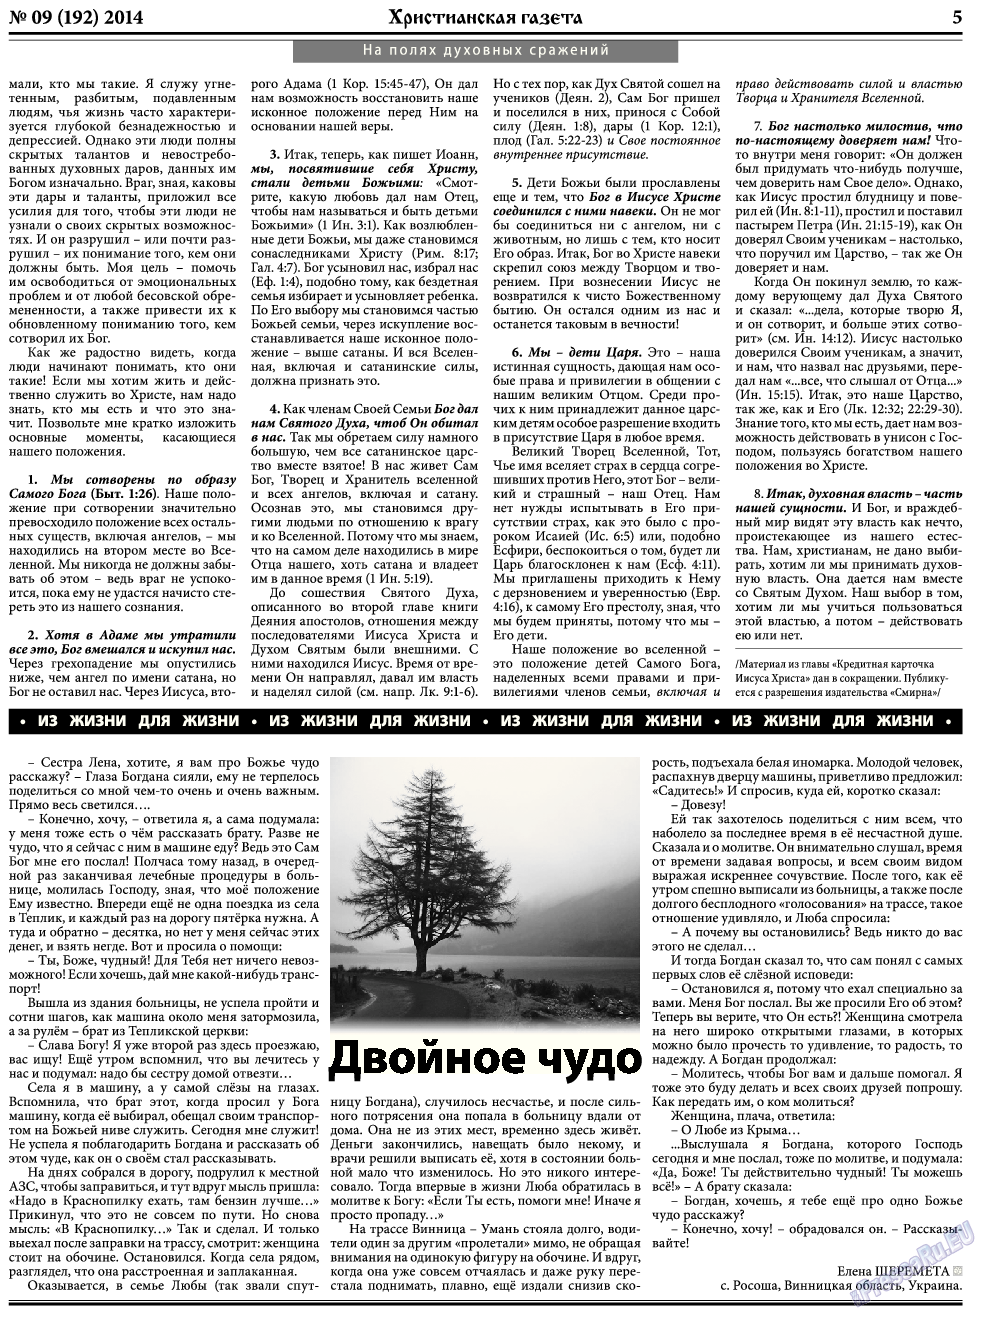 Христианская газета, газета. 2014 №9 стр.5